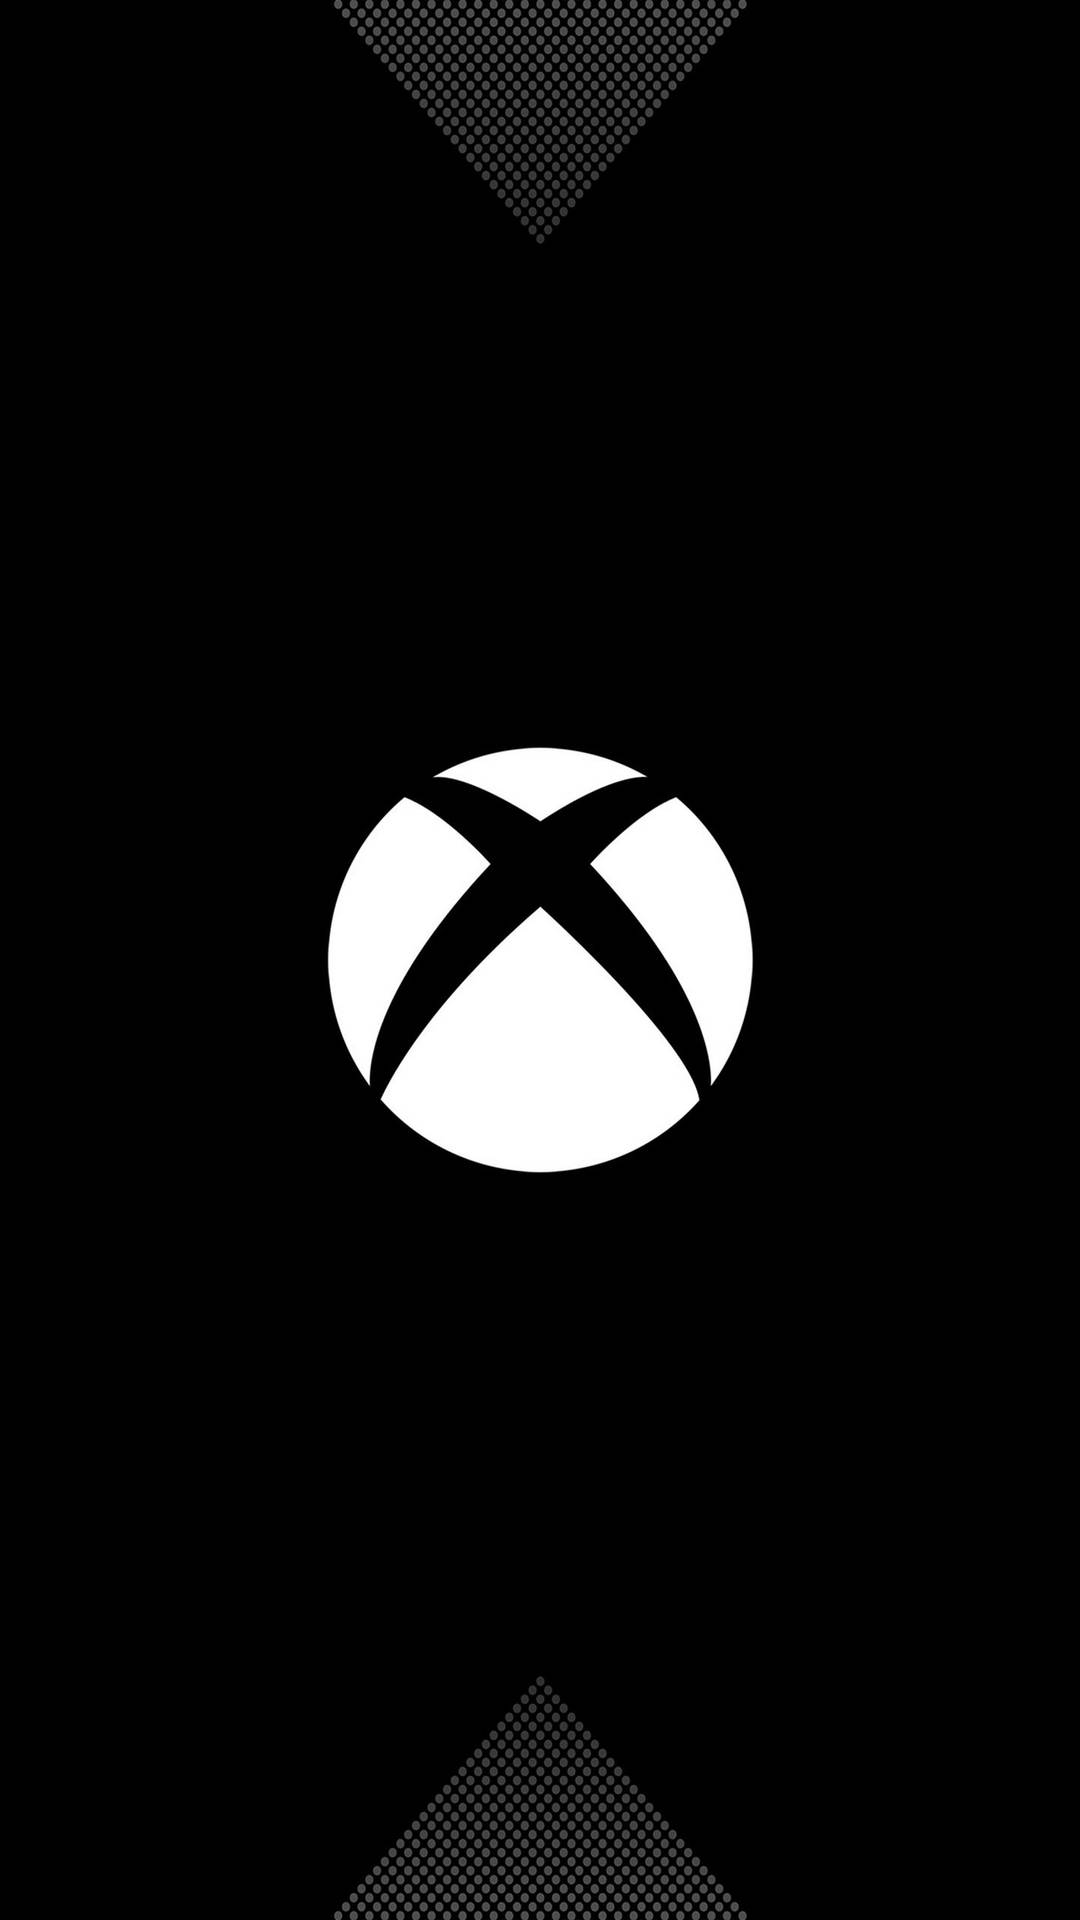 Pretoiphone Xbox One X. Papel de Parede